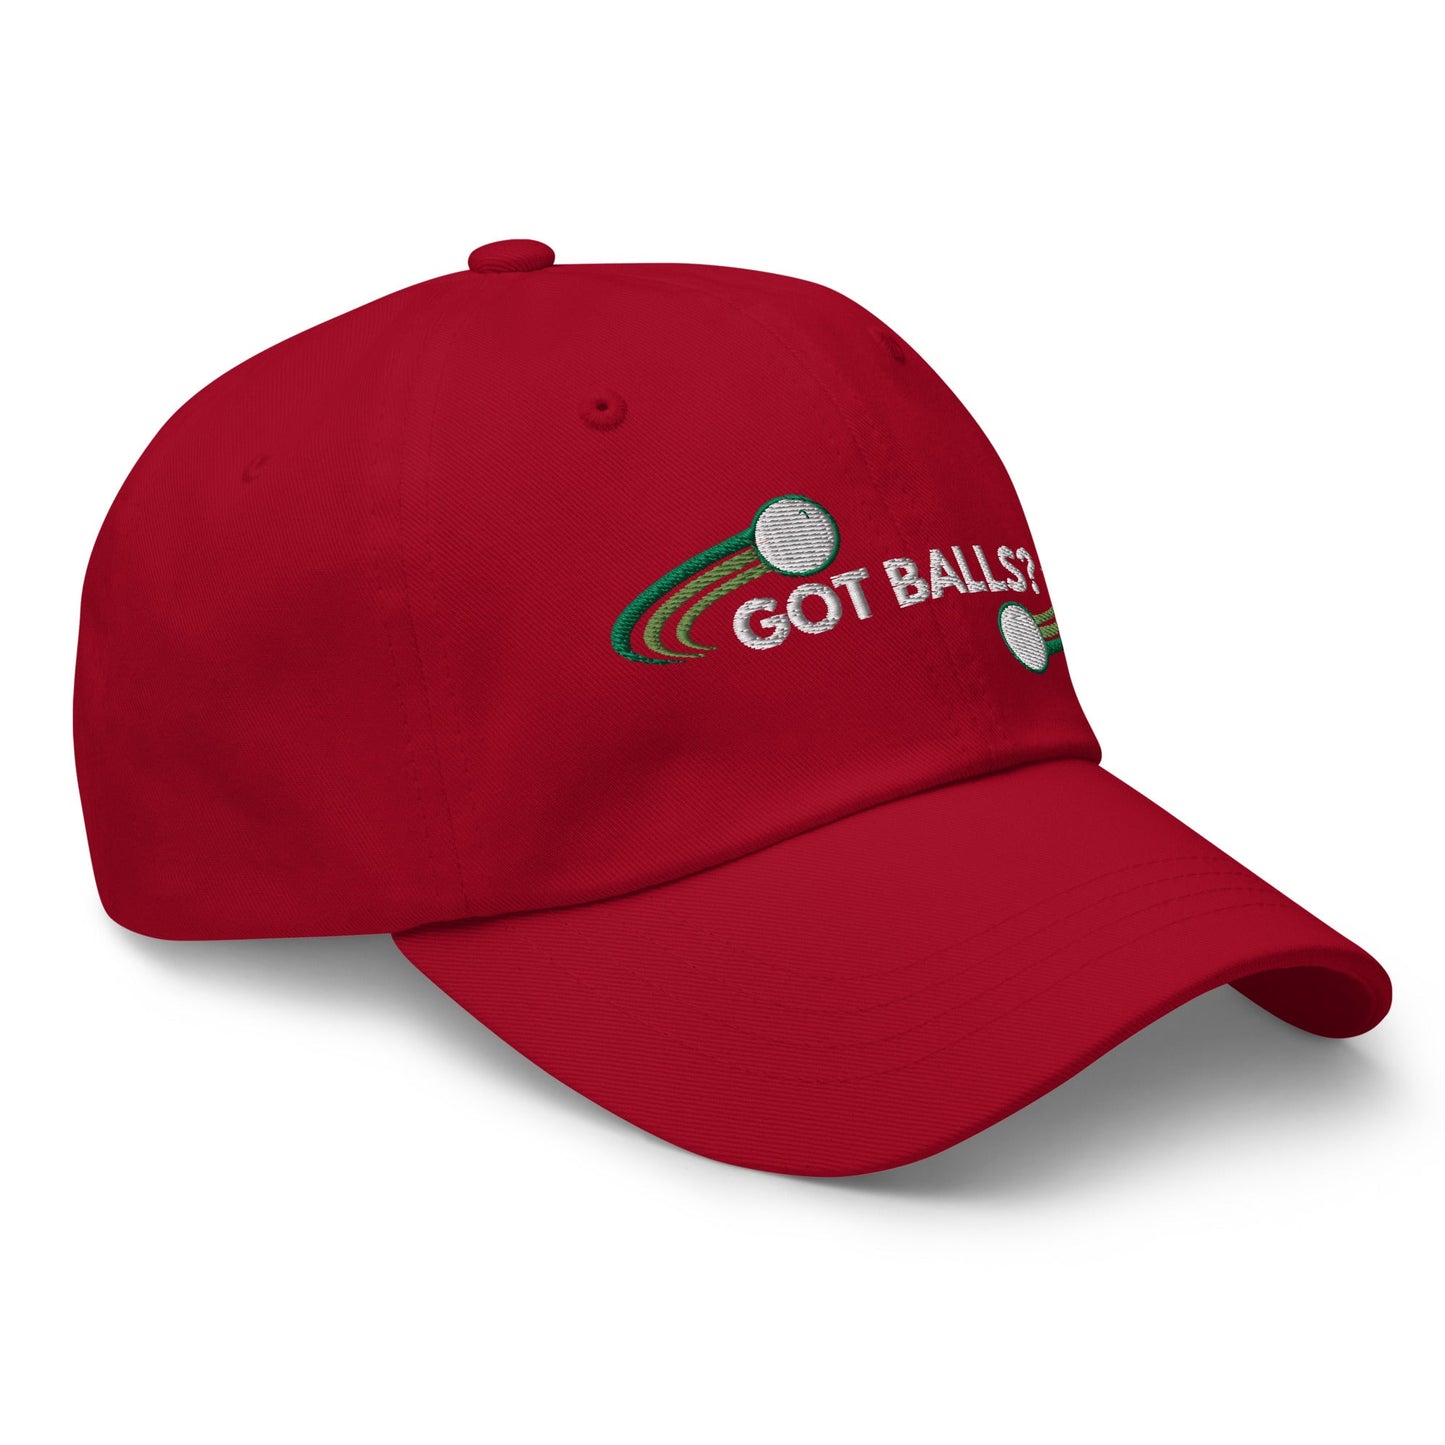 Funny Golfer Gifts  Dad Cap Cranberry Got Balls Cap